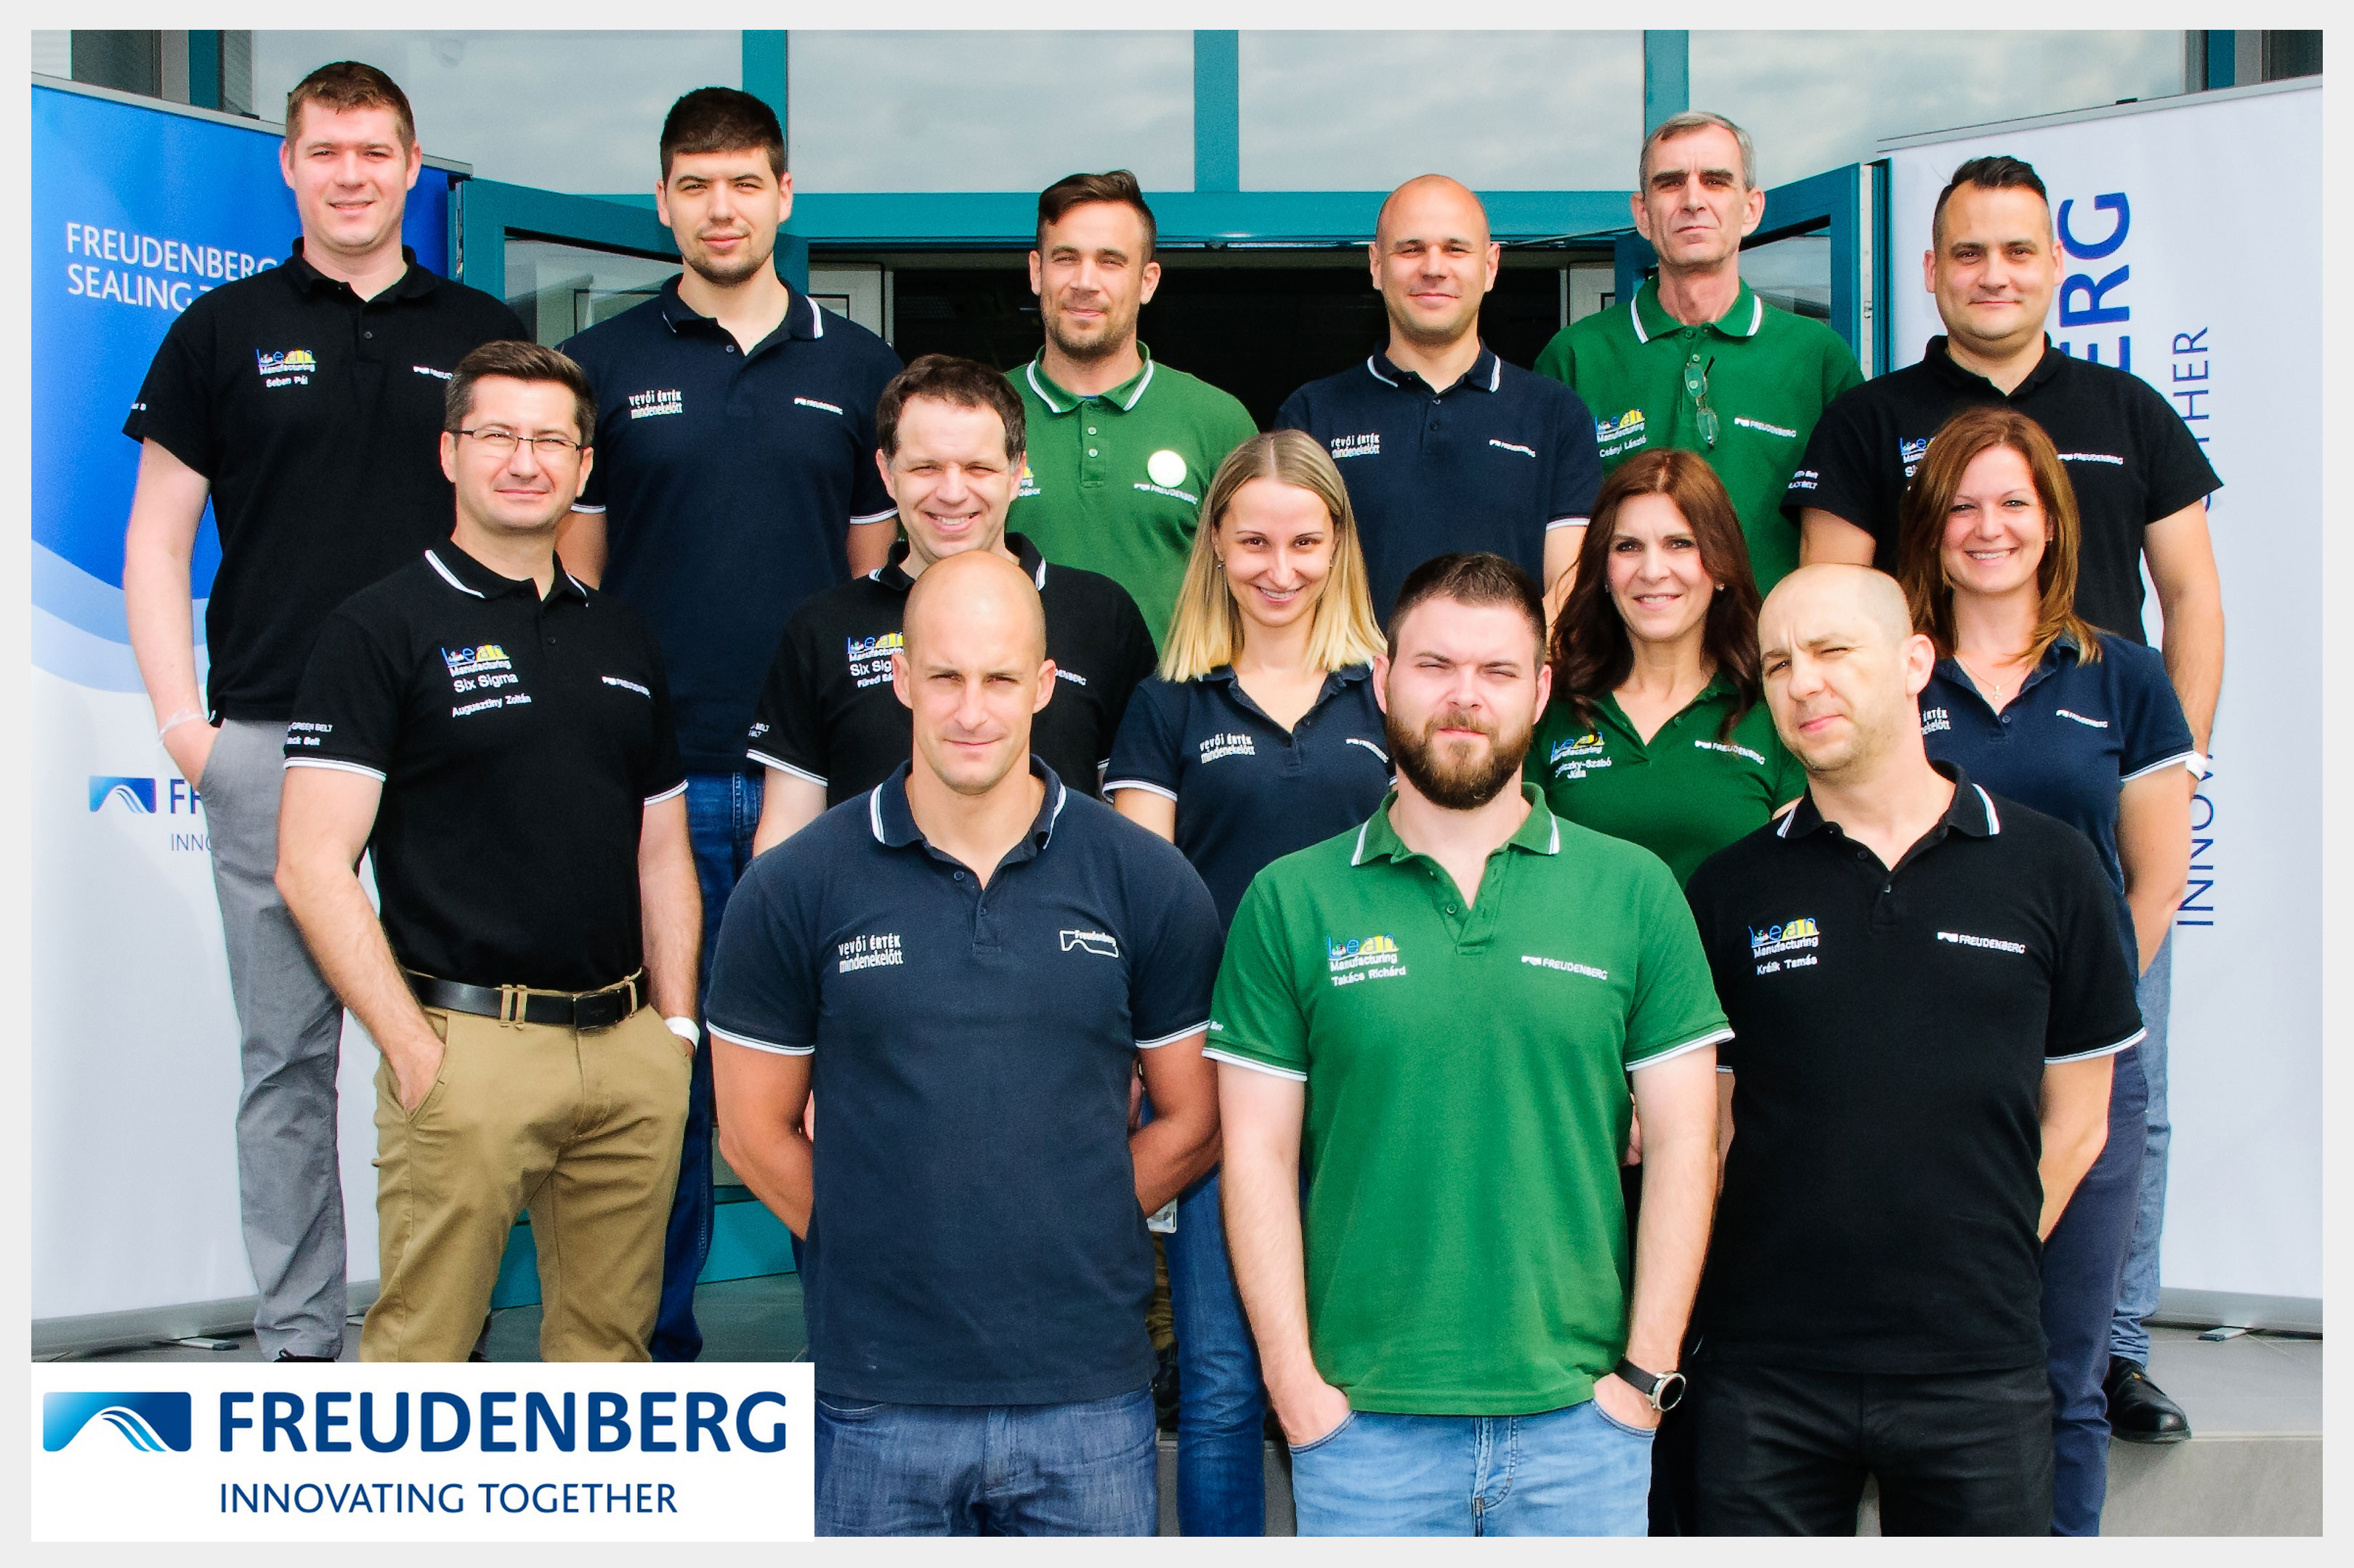 Group photo of Freudenberg Kecskemét employees